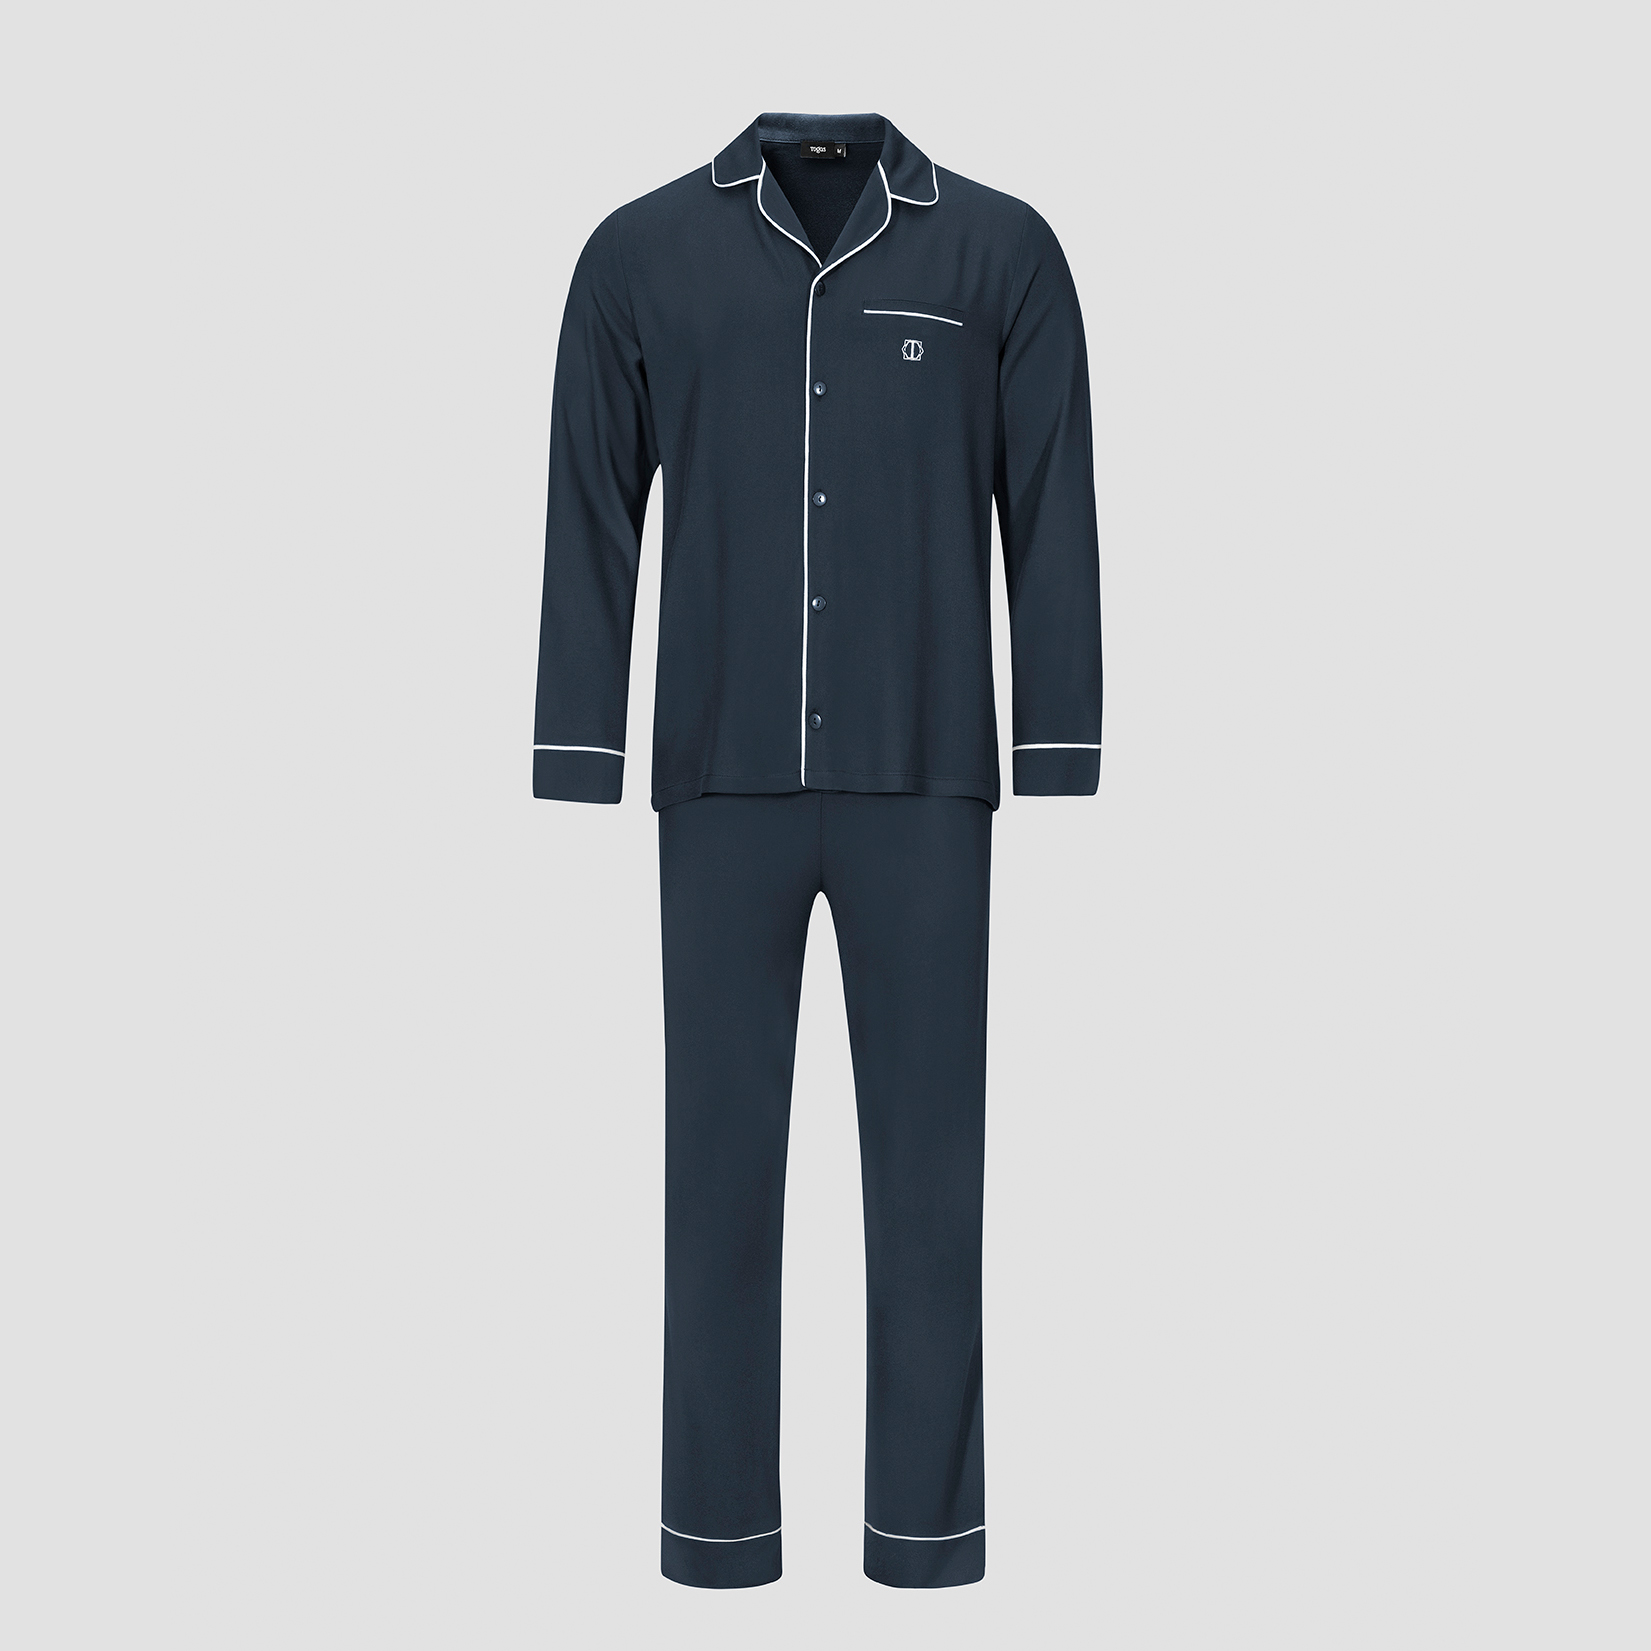 Пижама мужская Togas Альбен темно-синяя 2 предмета пижама брюки